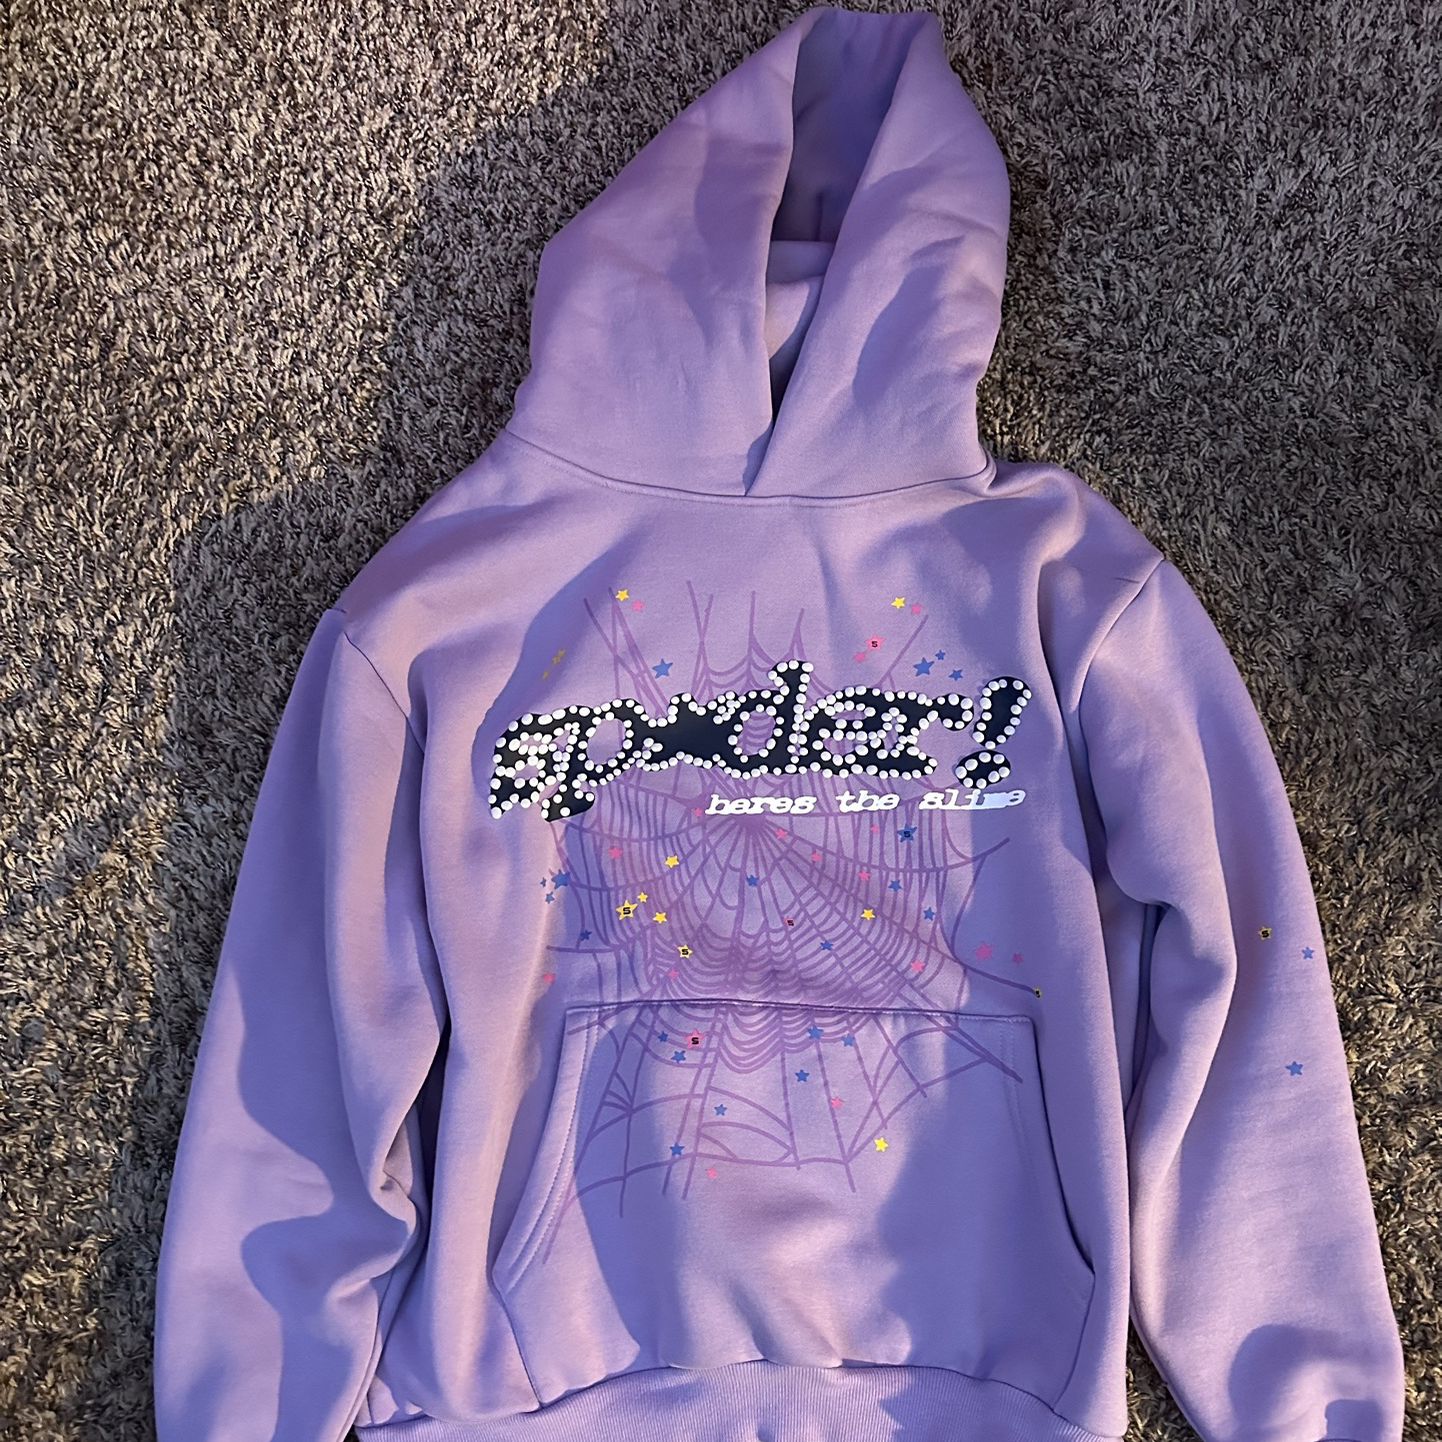 Sp5der Açaí hoodie “Purple” colorway